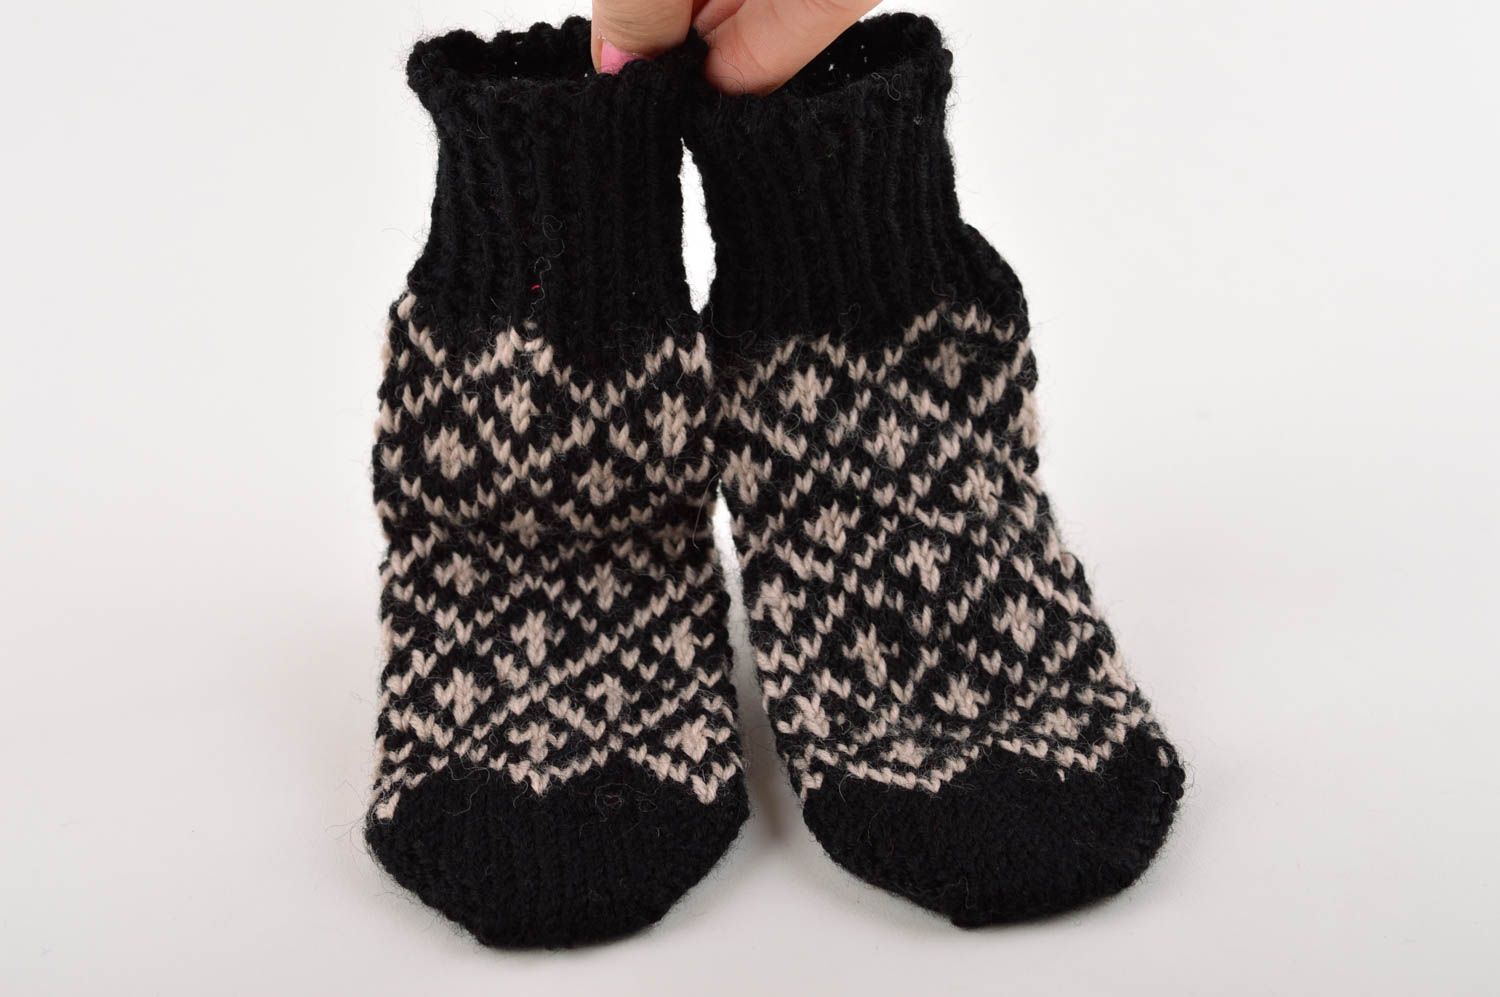 Носки ручной работы шерстяные носки теплые детские носки черно-белые с узорами фото 2